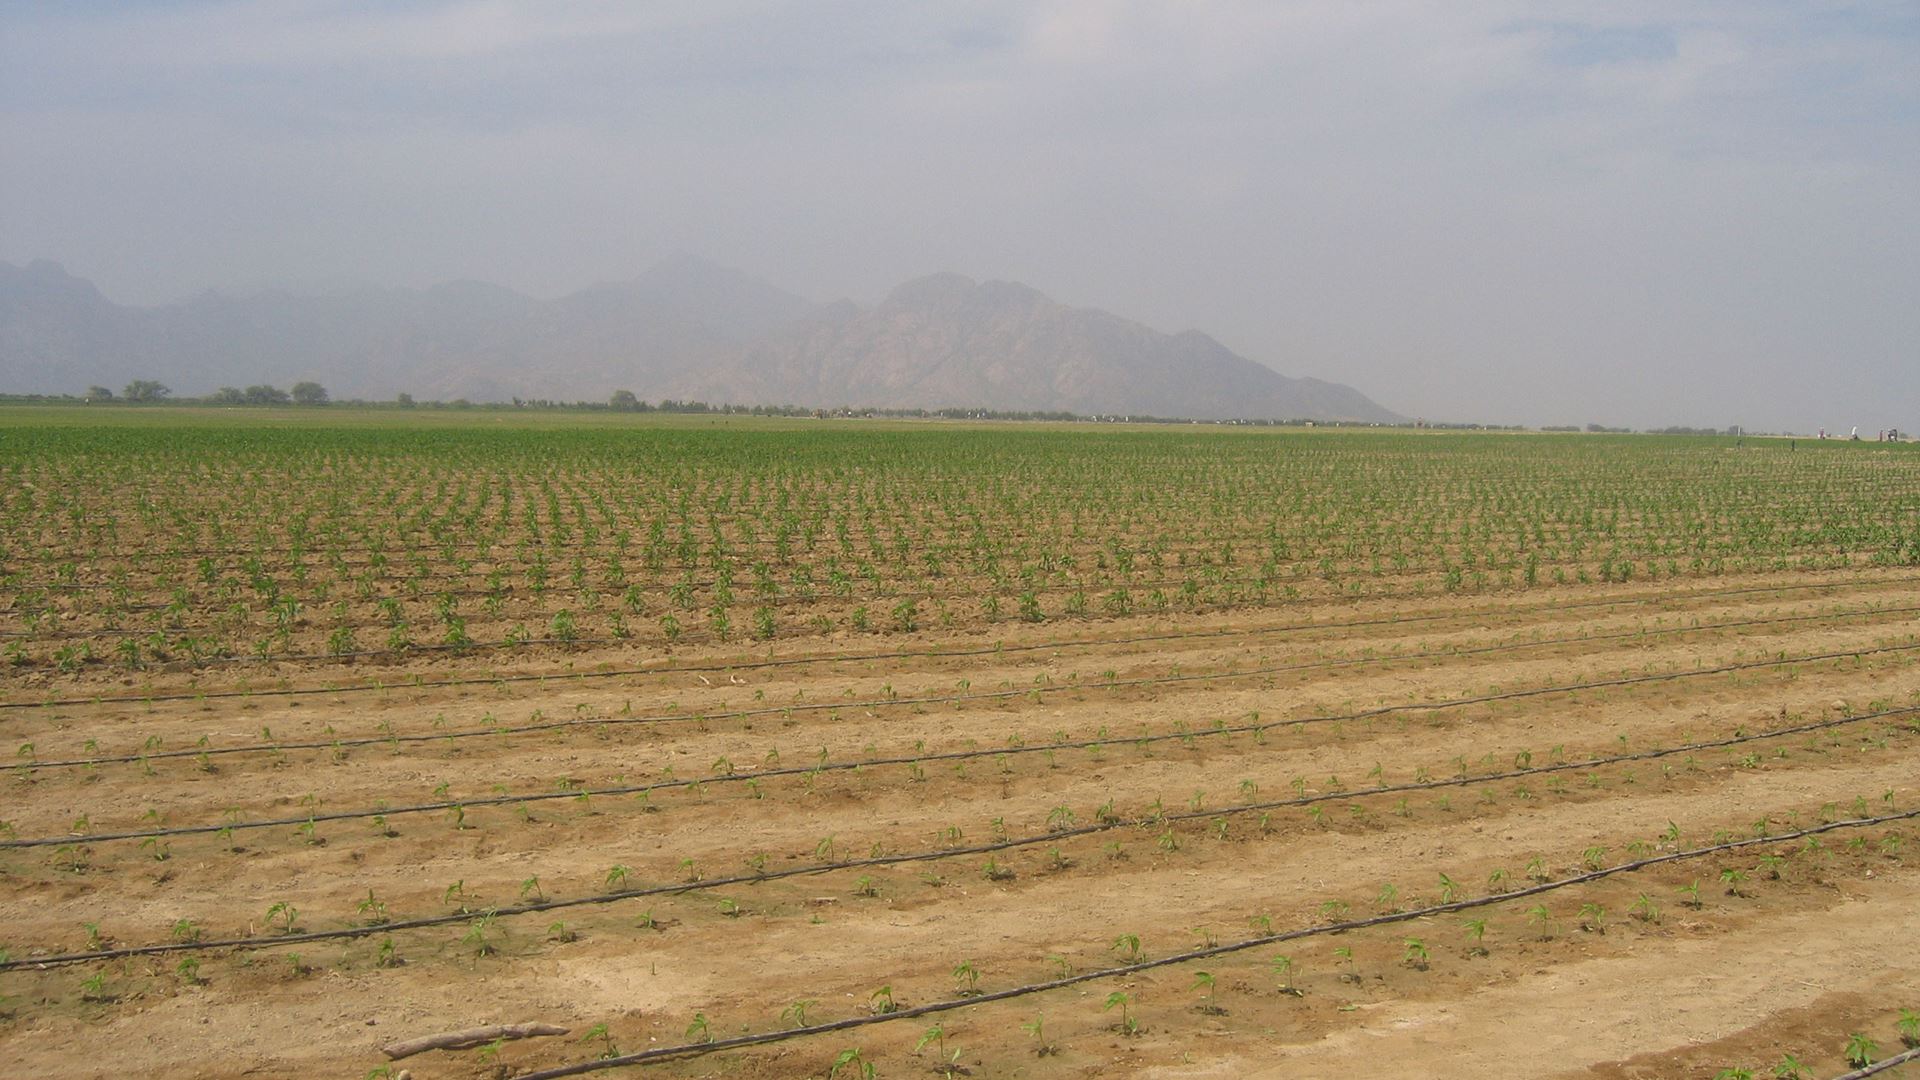 Irrigation of a chilli field in Peru.